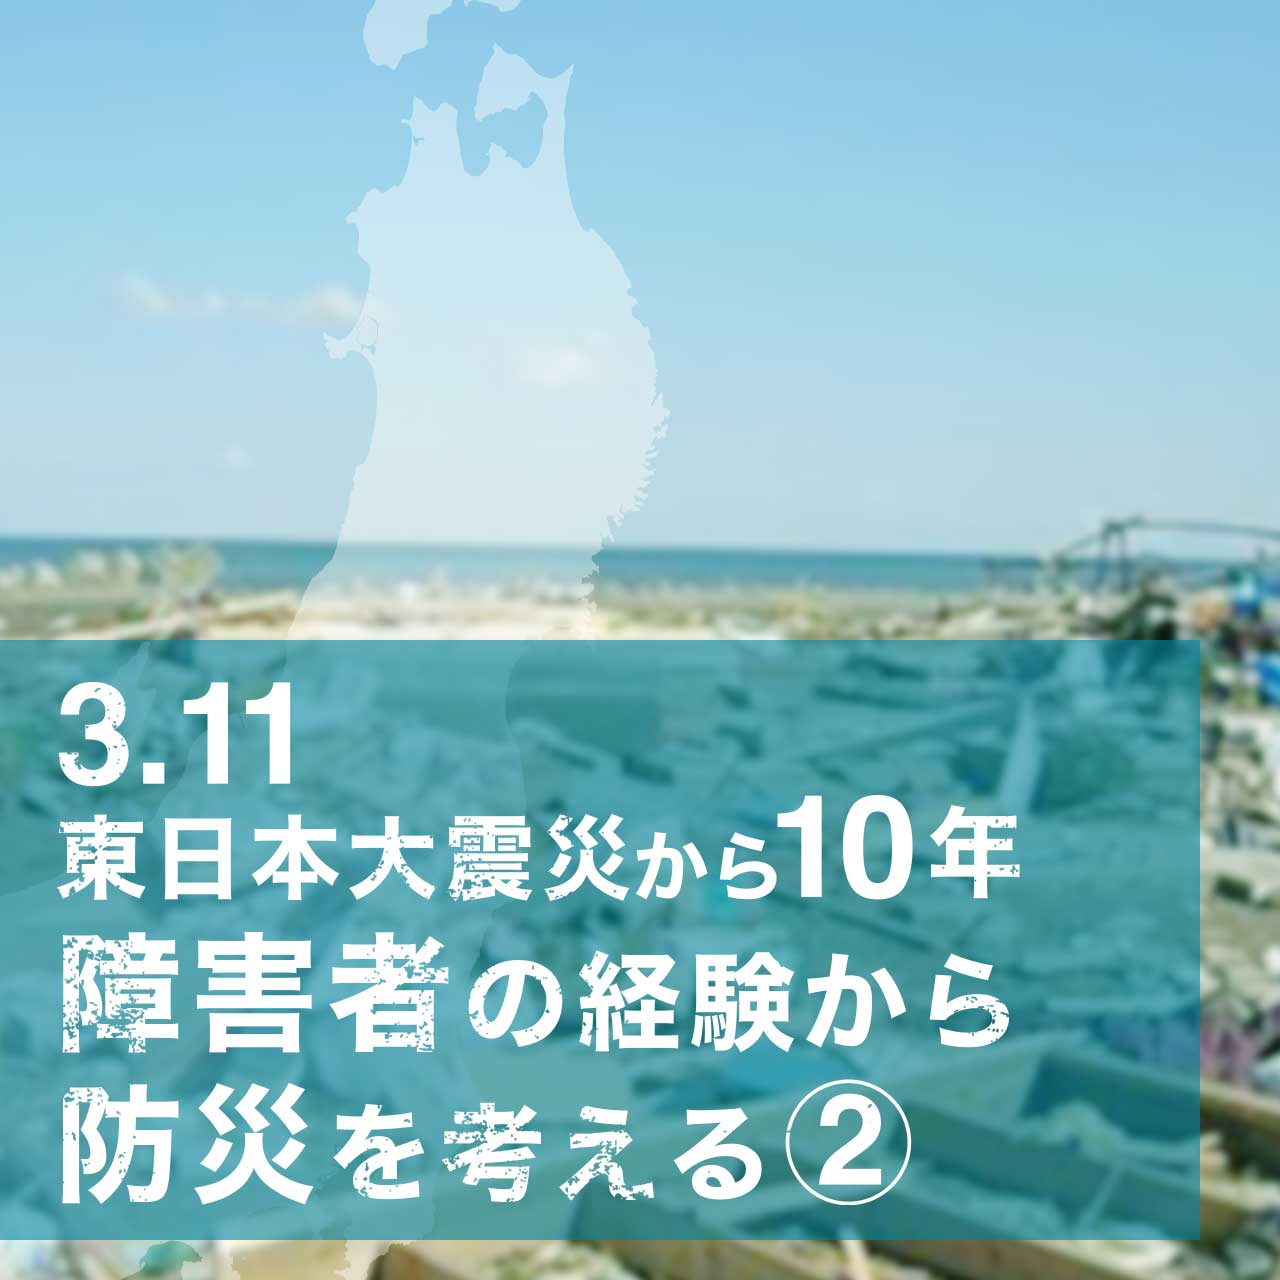 3.11東日本大震災から10年 障害者の経験から防災を考える2 -中途失明した翌年が3.11だった視覚障害者-